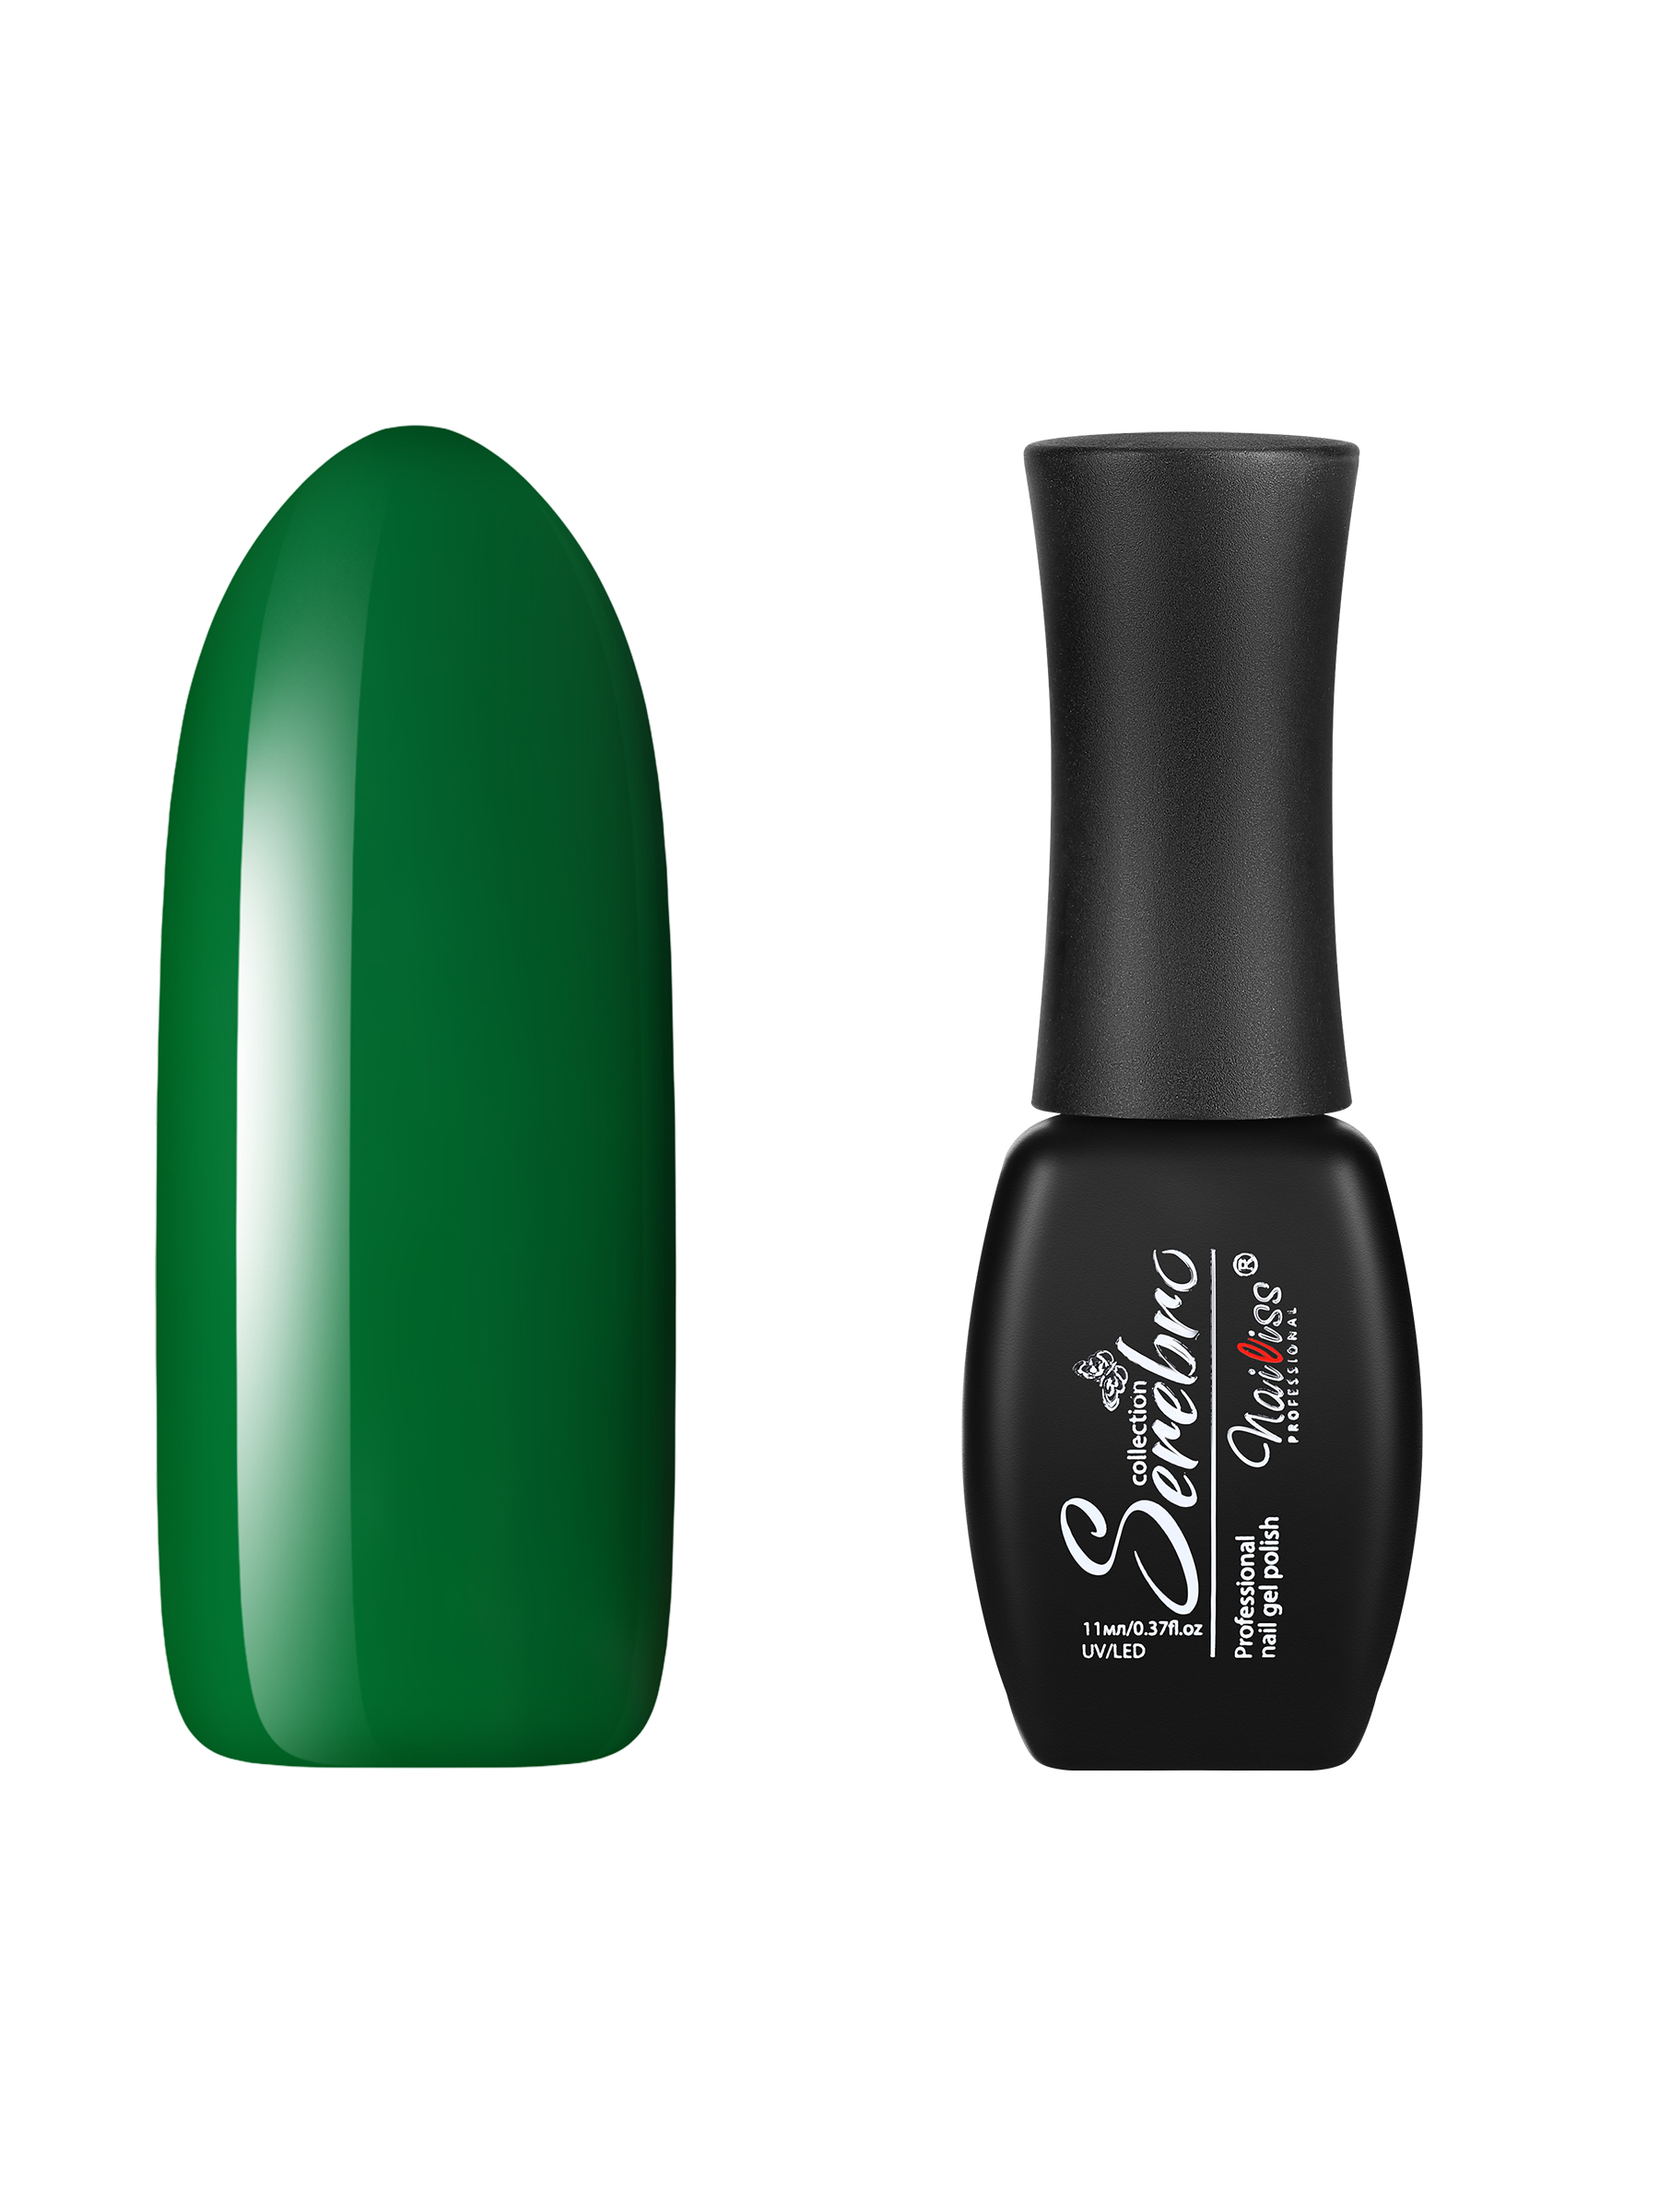 Гель-лак для ногтей Serebro, плотный, цветной, гипоаллергенный, насыщенный, зеленый, 11 мл женский танк топ мягкий spagetti ремешок camisole кружева тонкий жилет зеленый